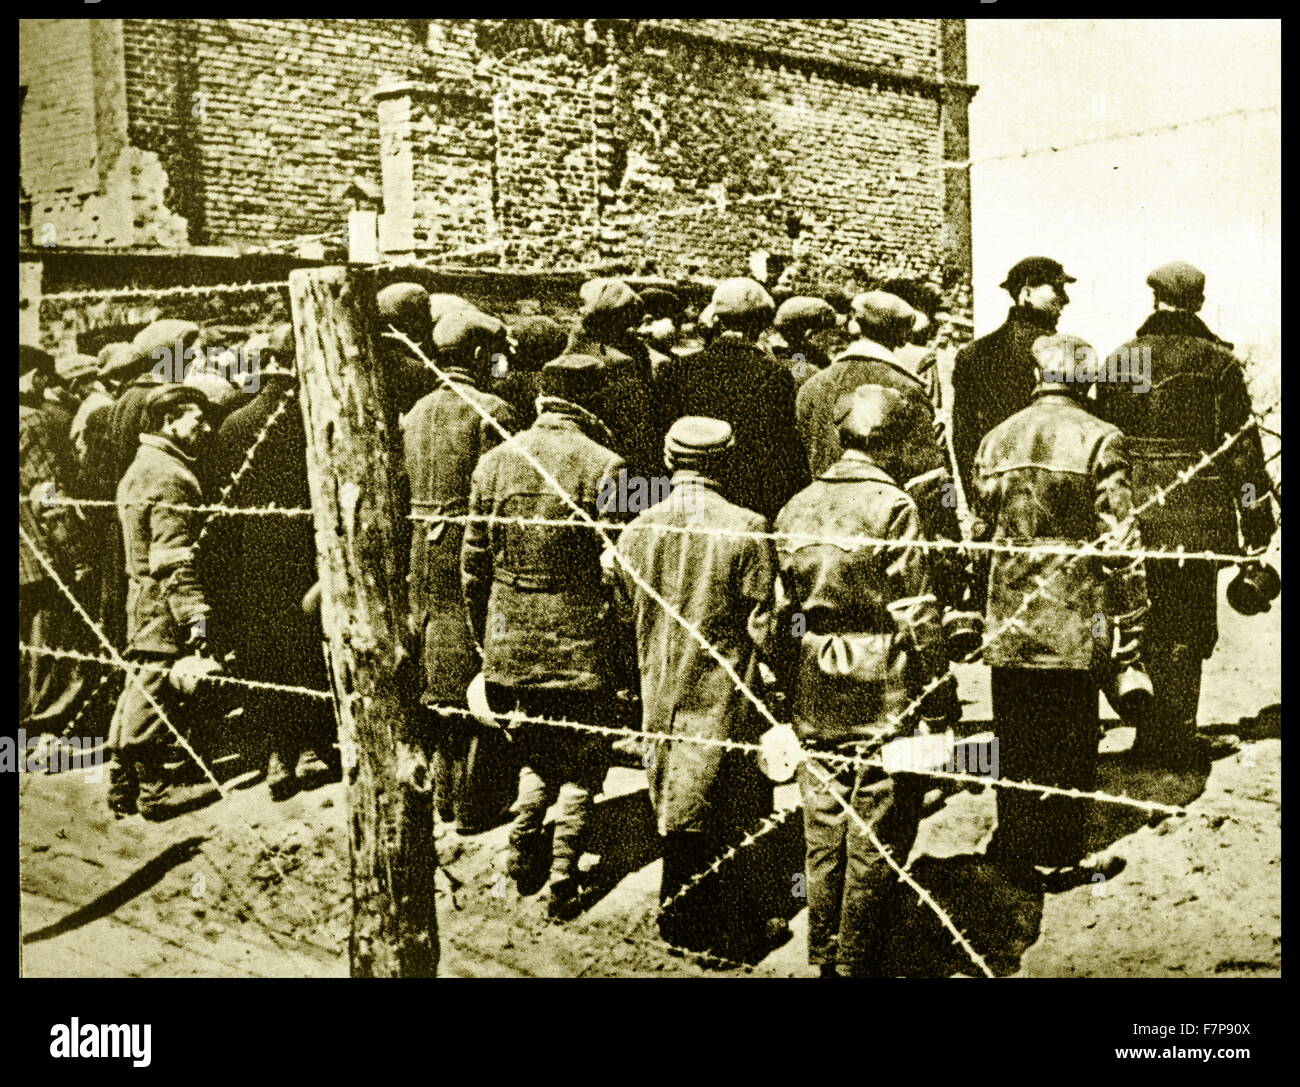 Inizio campo di concentramento per prisioners politico della Germania nazista di governo, Germania 1938. Foto Stock